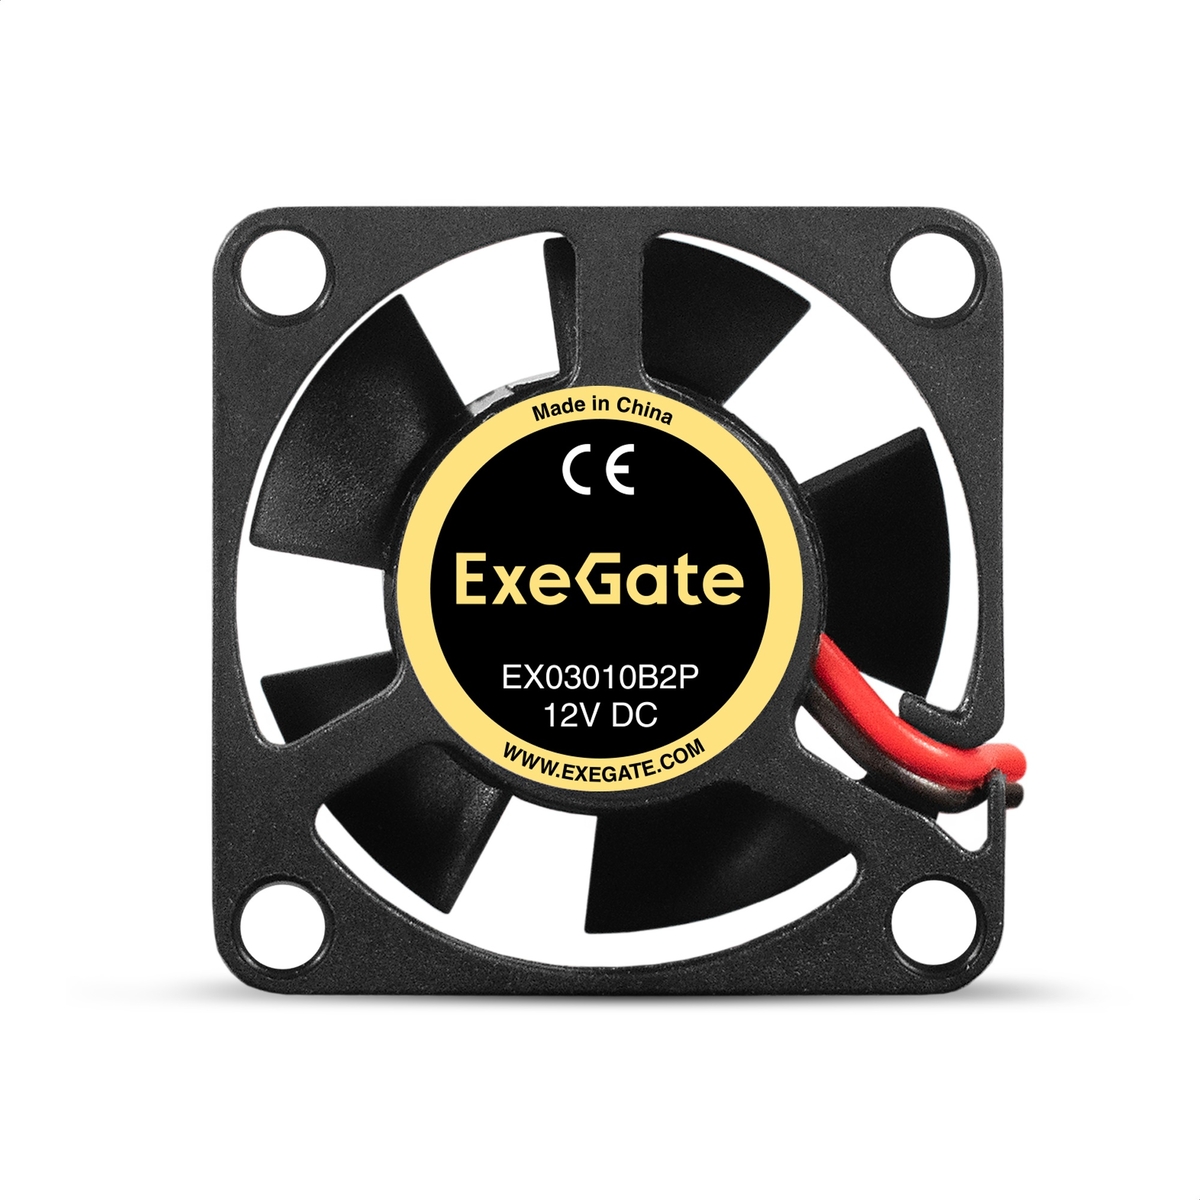  ExeGate EX03010B2P